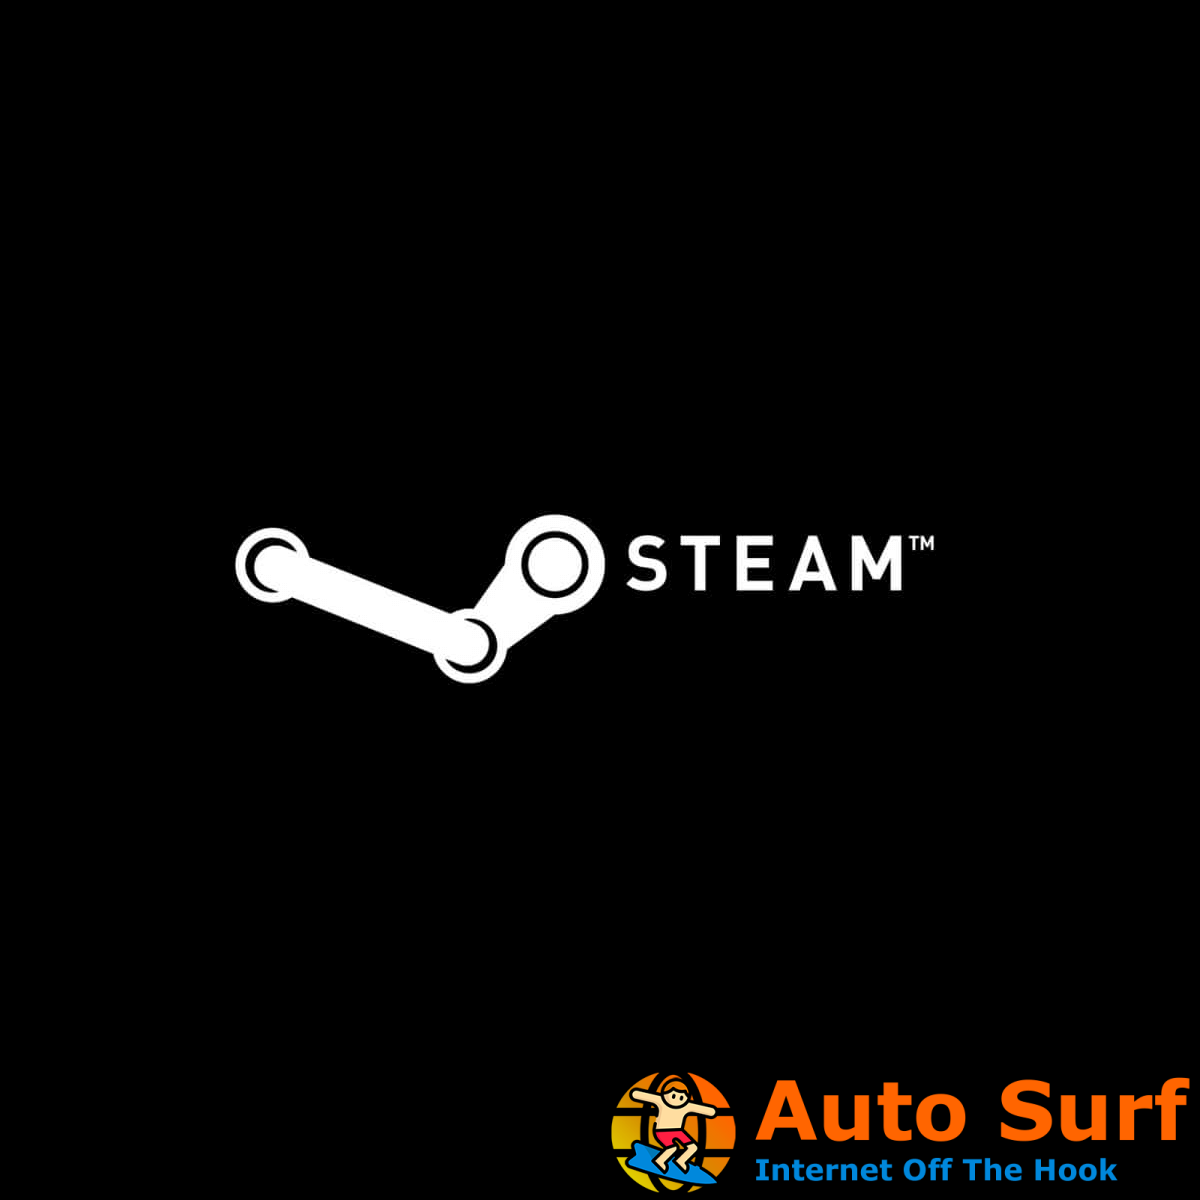 ¿Steam no responde en tu PC? Pruebe estas sencillas soluciones